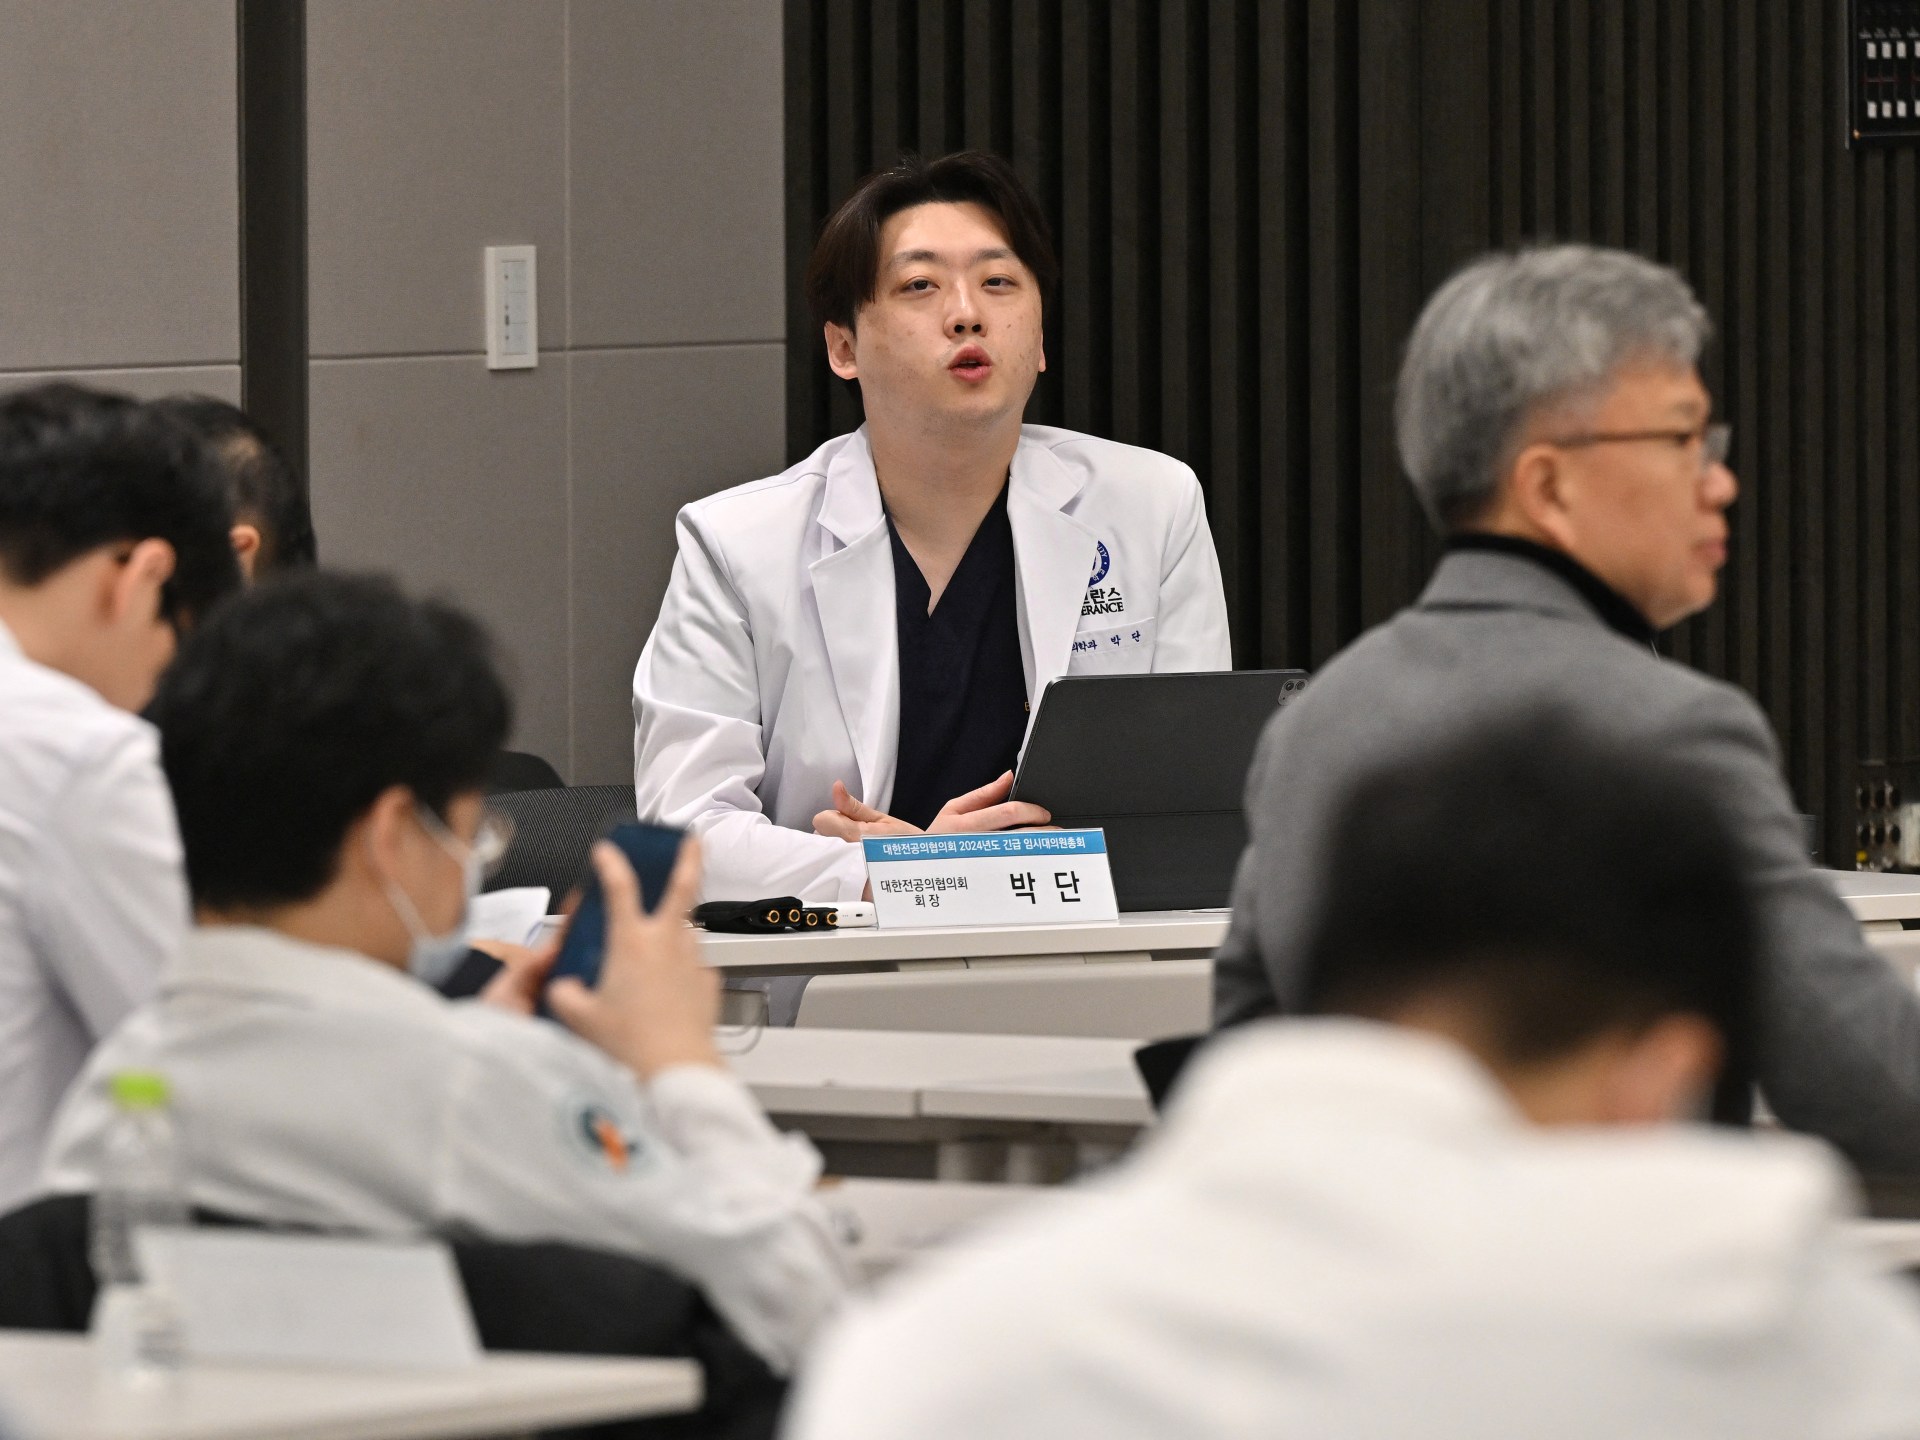 Les médecins stagiaires en Corée du Sud se retirent pour protester contre les réformes |  Nouvelles